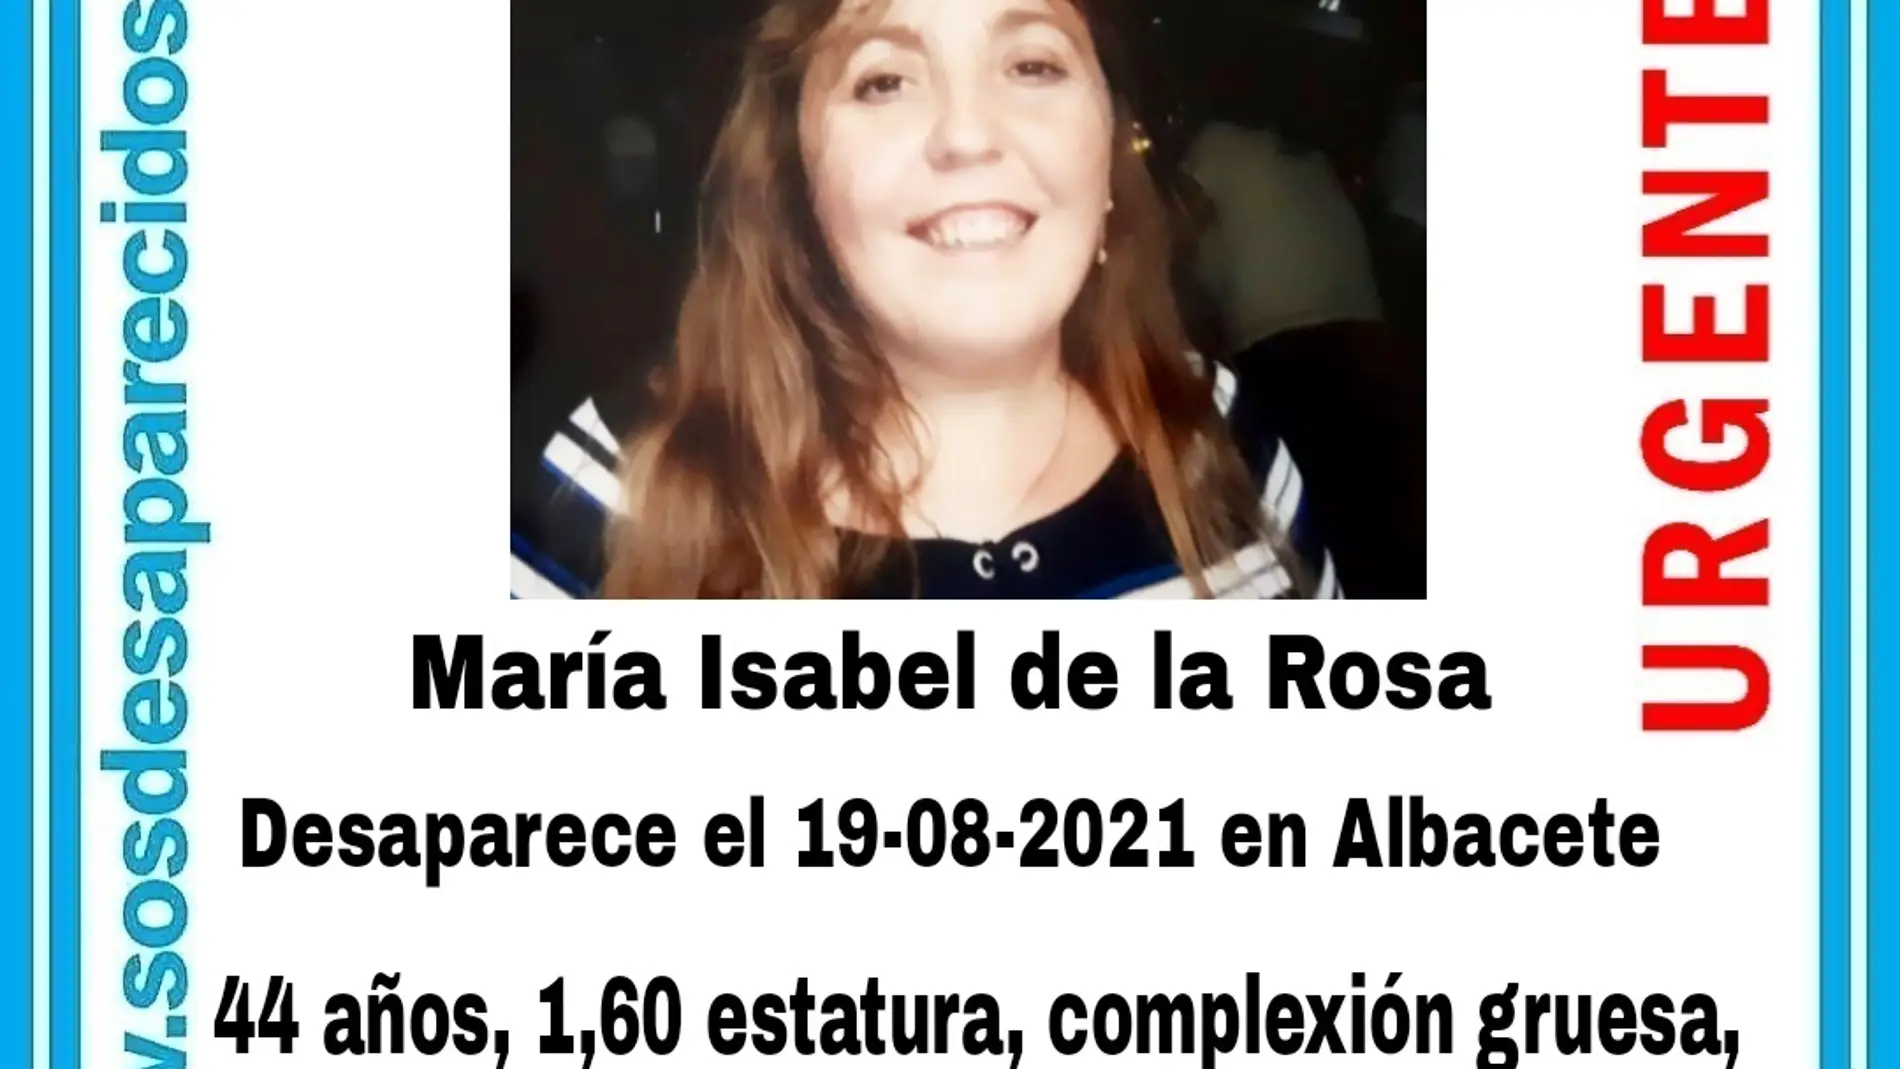 Continúa la búsqueda de María Isabel, unaavendedora de la Once desaparecida desde el jueves en Albacete